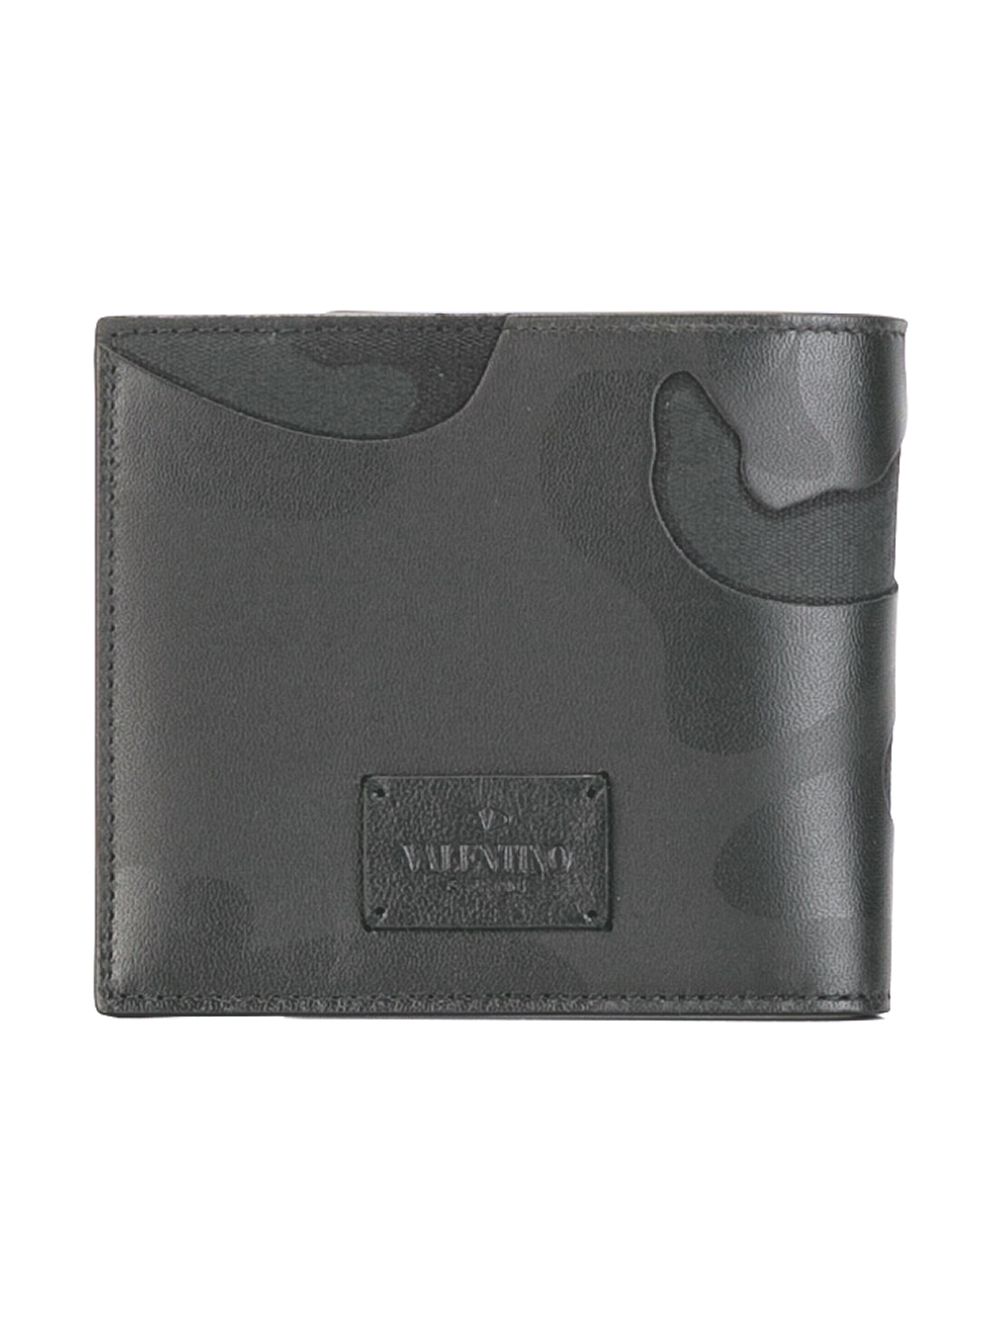 фото Valentino кошелек Valentino Garavani с камуфляжной отделкой